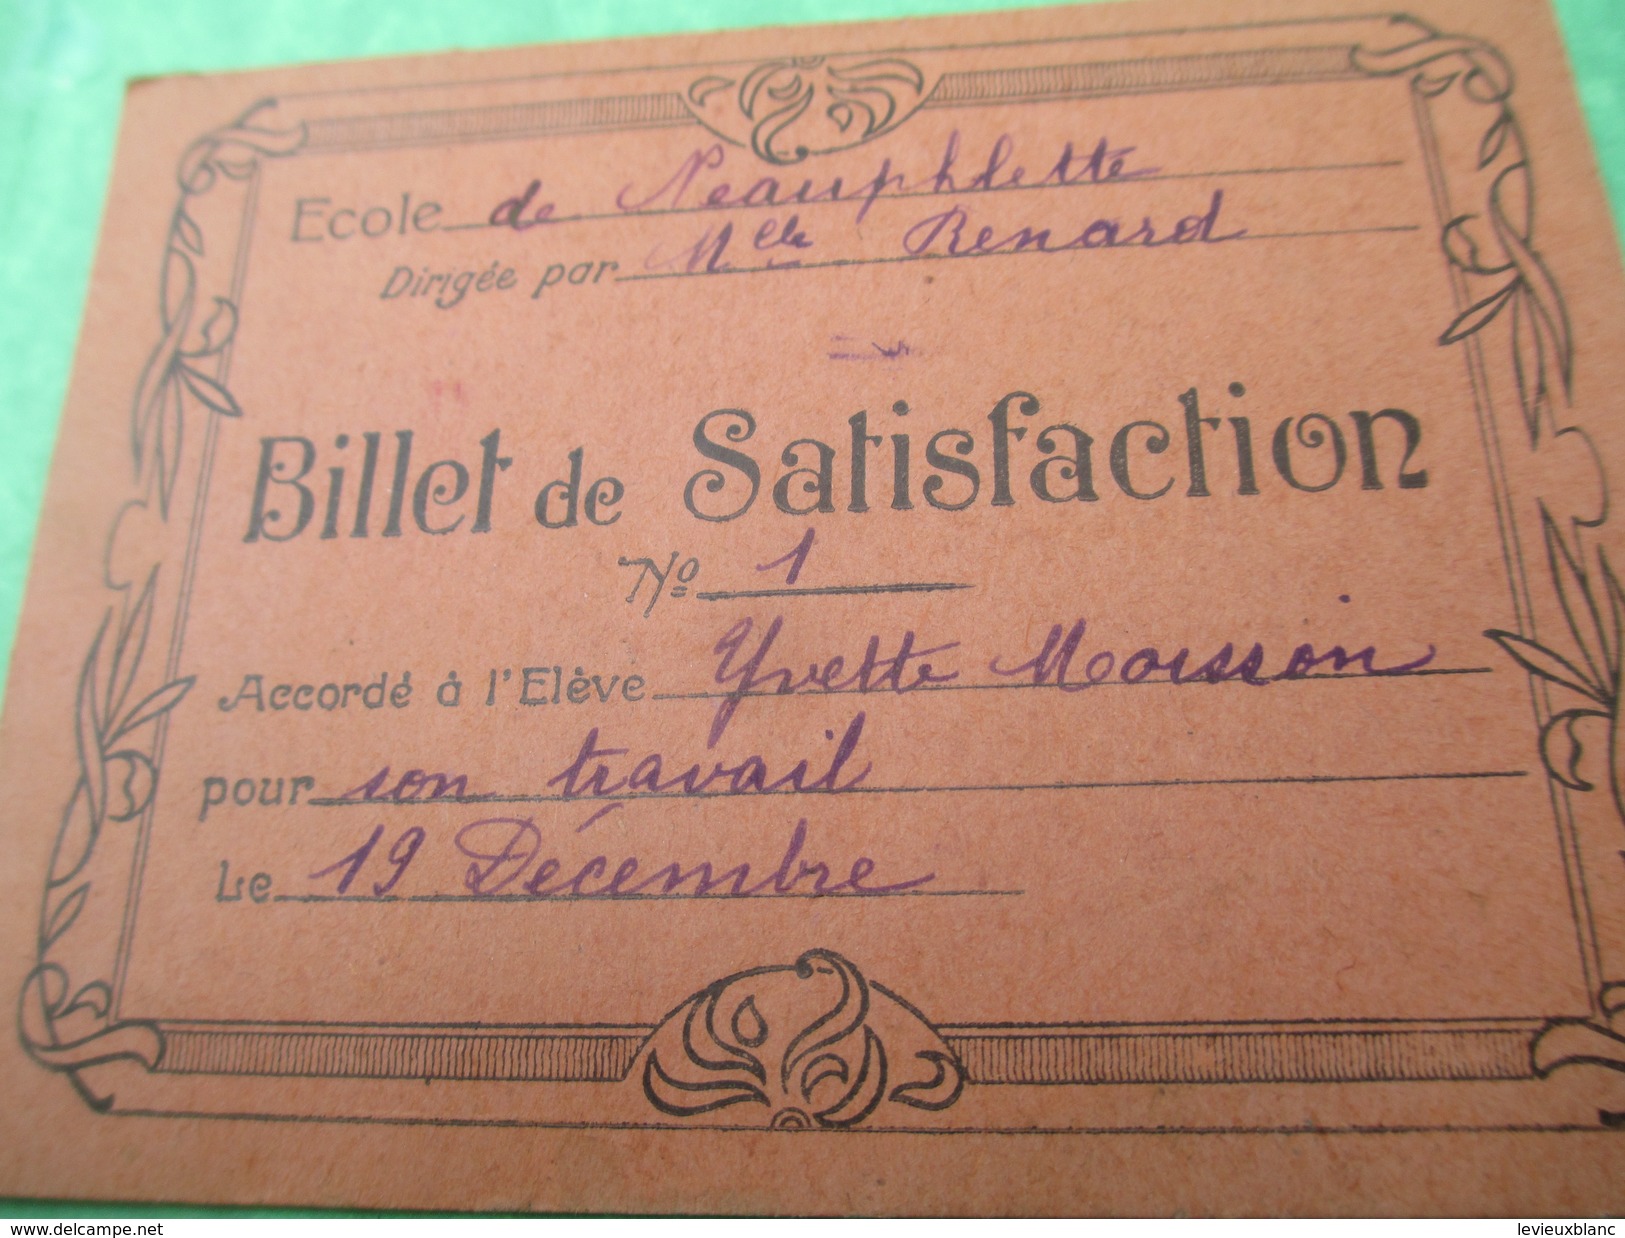 Billets De Satisfaction/Ecole De NEAUPHLETTE/S Et O/Directrice Melle Renard/Yvette Et Antoinette Moisson/1932     CAH156 - Diplome Und Schulzeugnisse